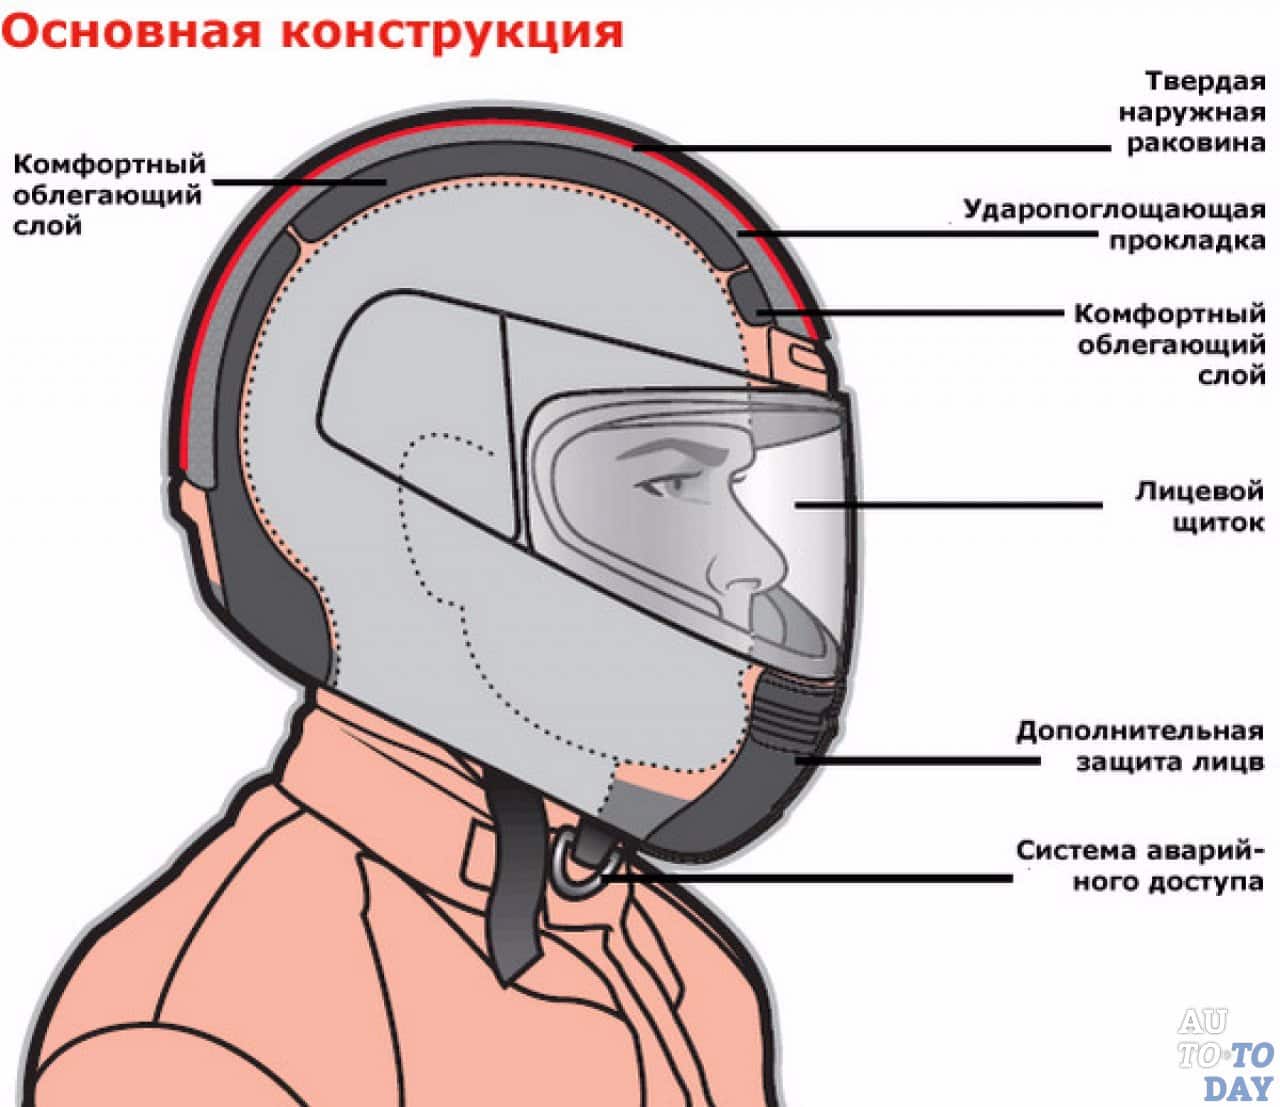 Мото-шлем. оригинальность или безопасность – выбор за вами! так уж сложилось, что мото-шлем, один из главных и широко распространенных атрибутов мотоциклиста. можно обойтись без каких-то элементов